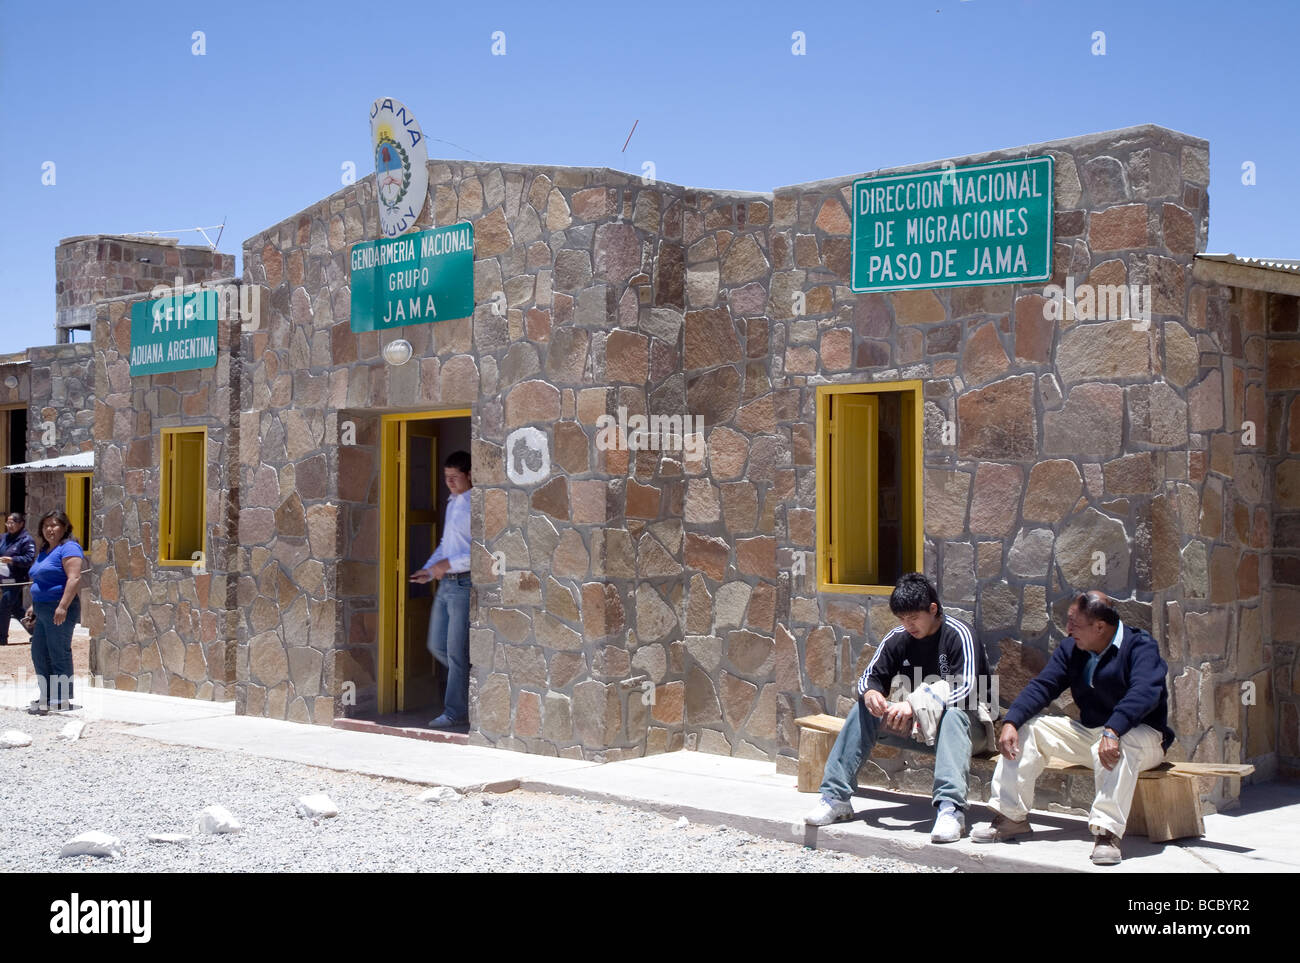 La gente esperando en el cruce fronterizo argentino en lo alto de los Andes, Paso de Jama, Argentina Foto de stock